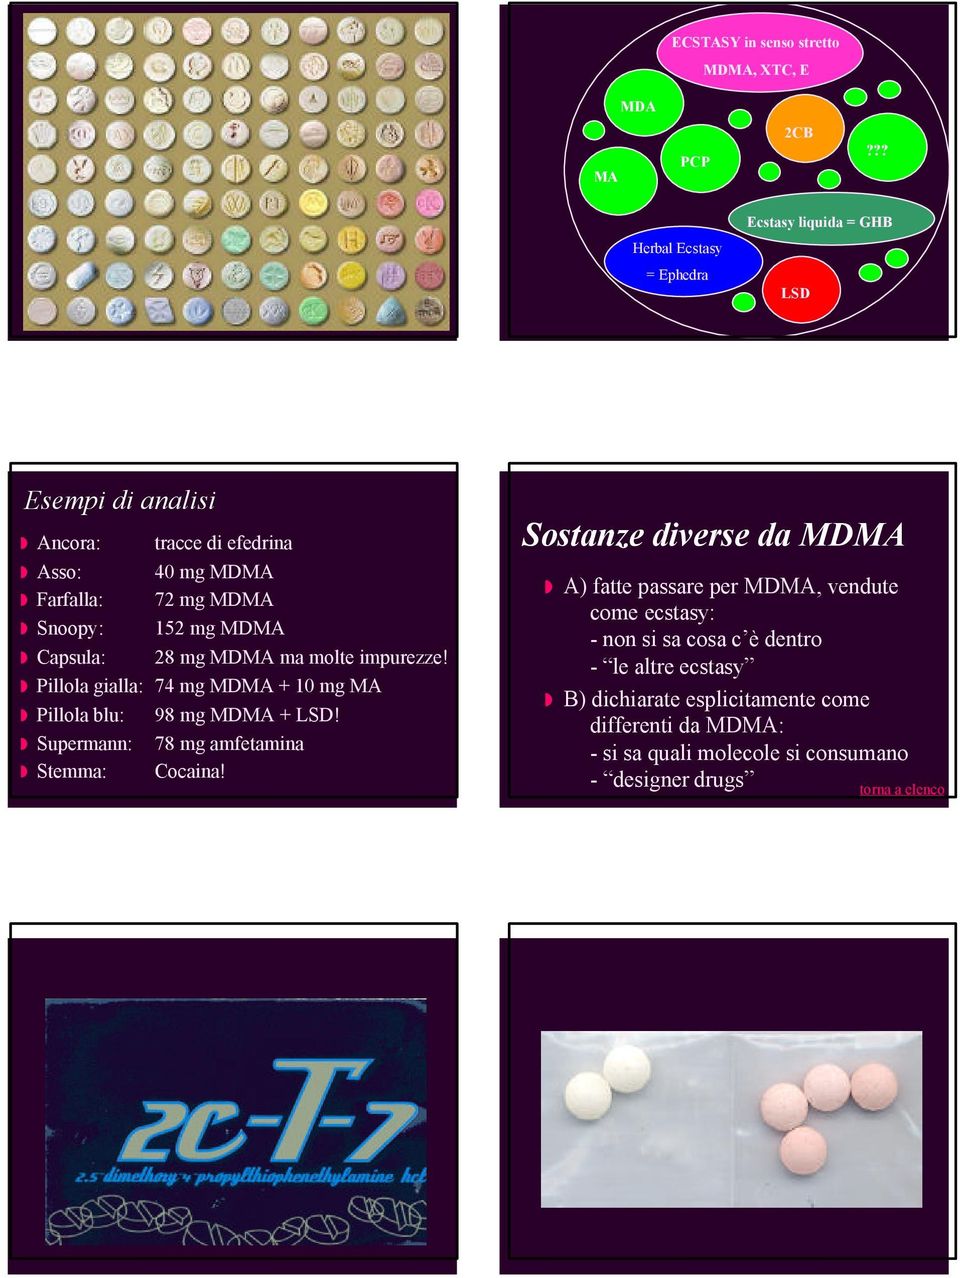 152 mg MDMA Capsula: 28 mg MDMA ma molte impurezze! Pillola gialla: 74 mg MDMA + 10 mg MA Pillola blu: 98 mg MDMA + LSD!